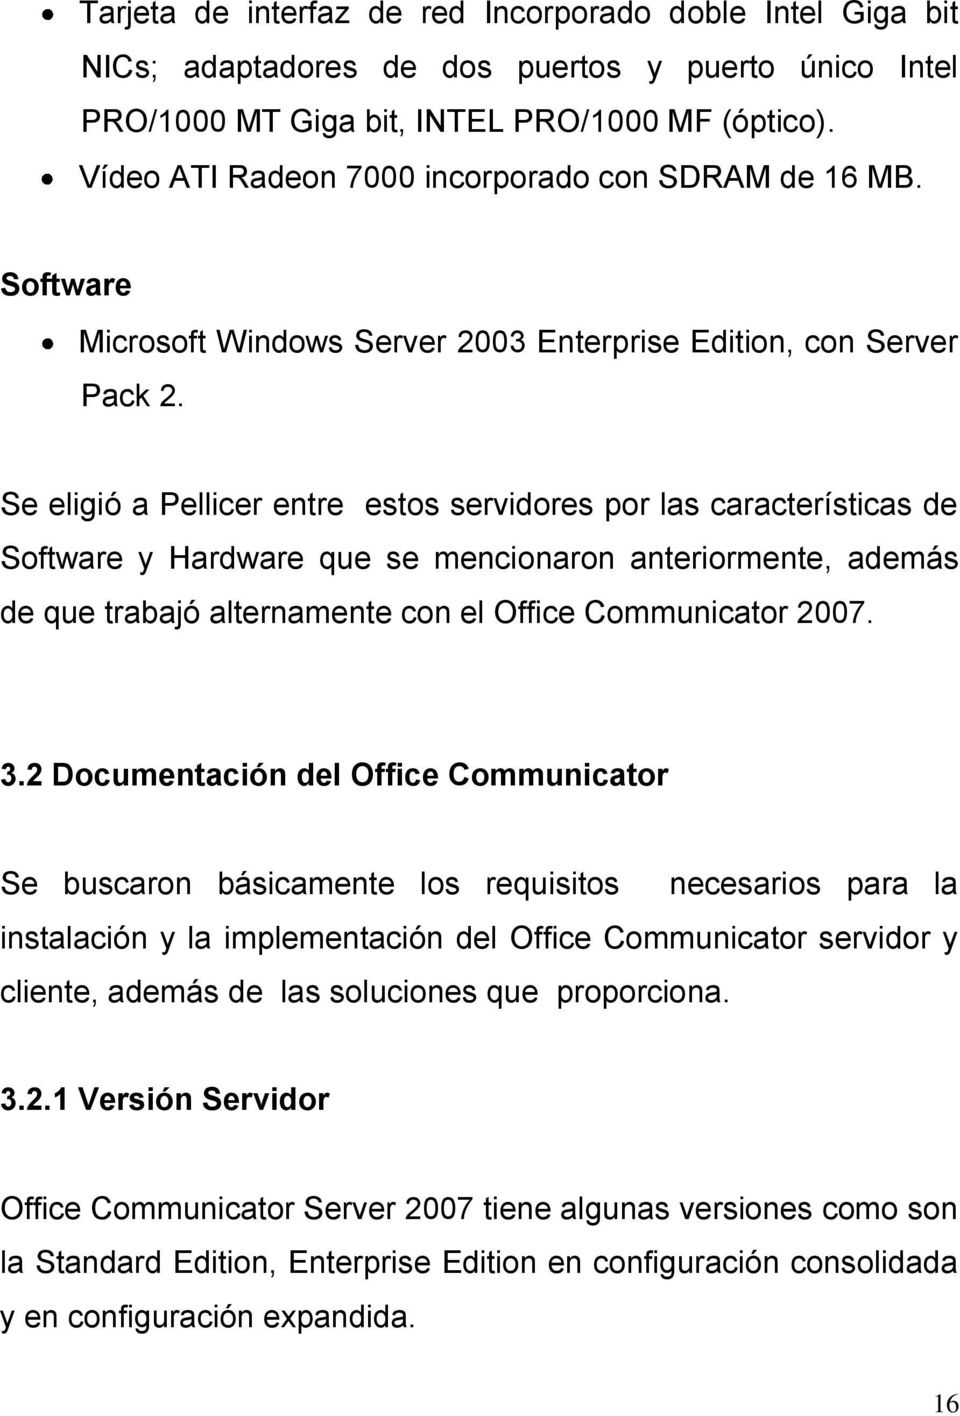 Se eligió a Pellicer entre estos servidores por las características de Software y Hardware que se mencionaron anteriormente, además de que trabajó alternamente con el Office Communicator 2007. 3.